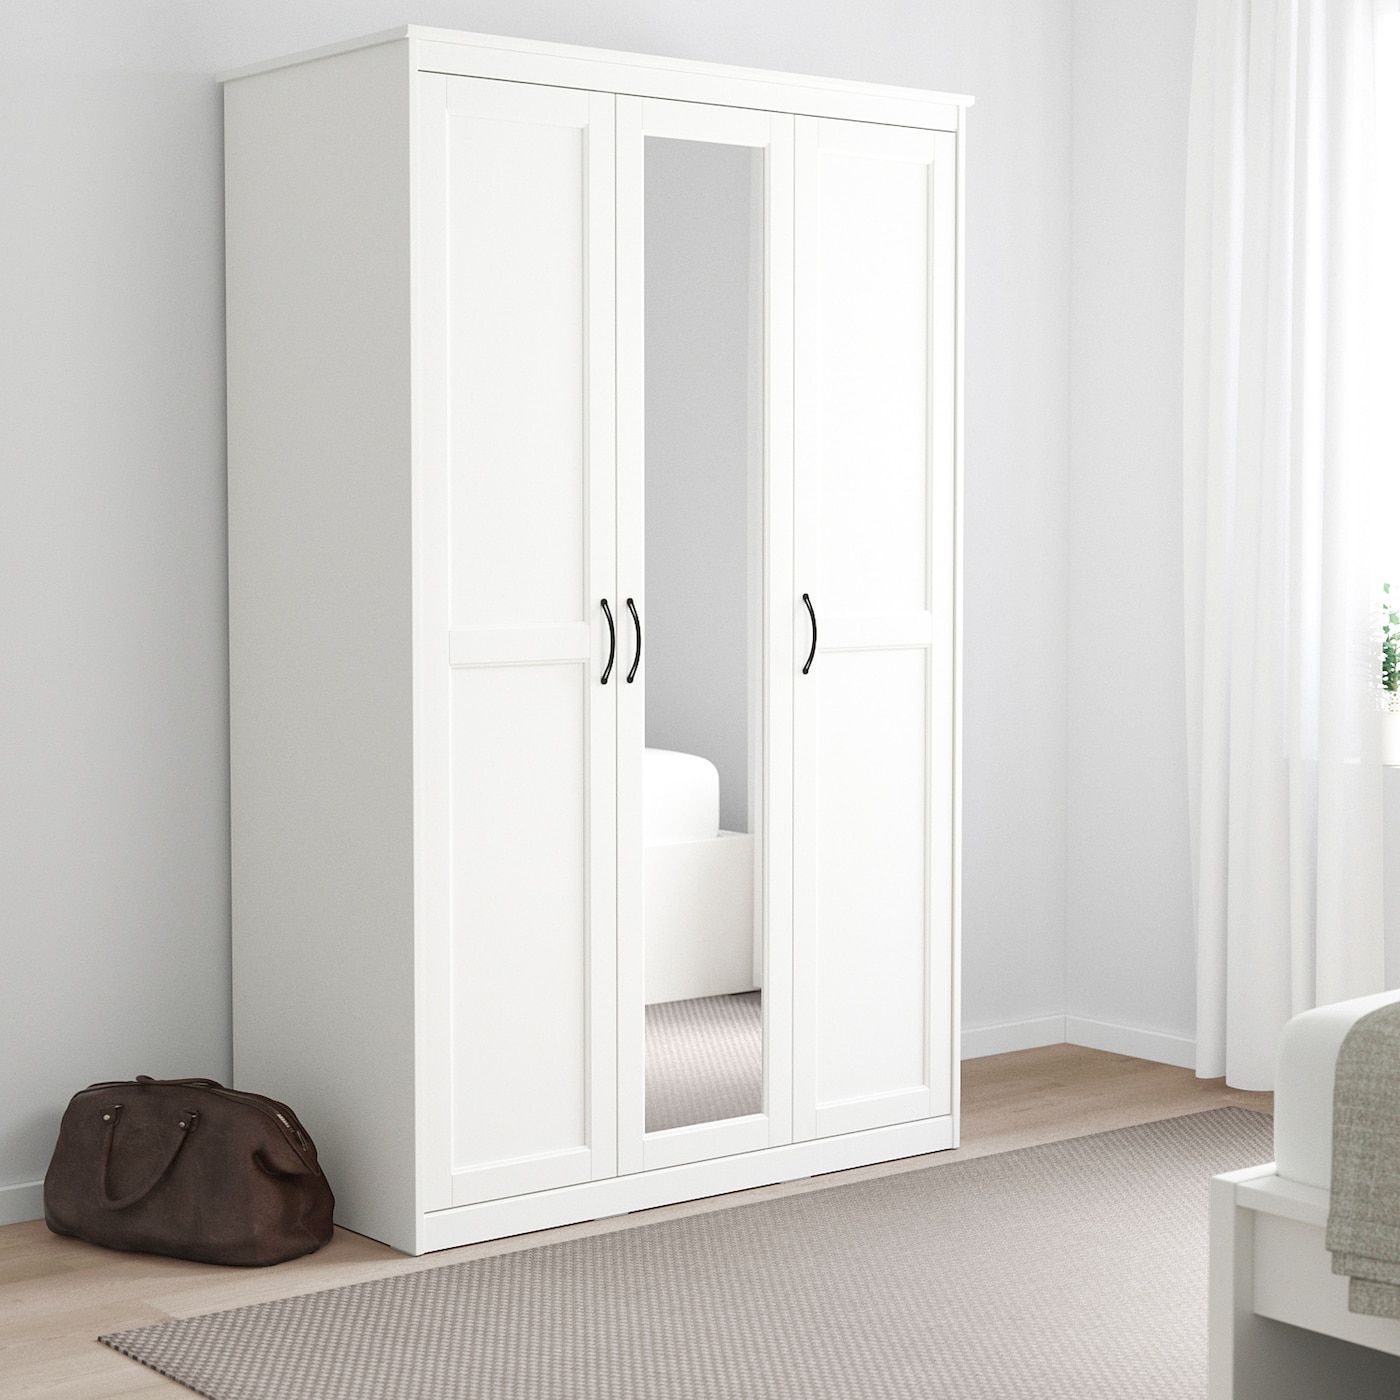 Songesand White, Wardrobe, 120x60x191 Cm – Ikea With Regard To White Cheap Wardrobes (View 3 of 20)